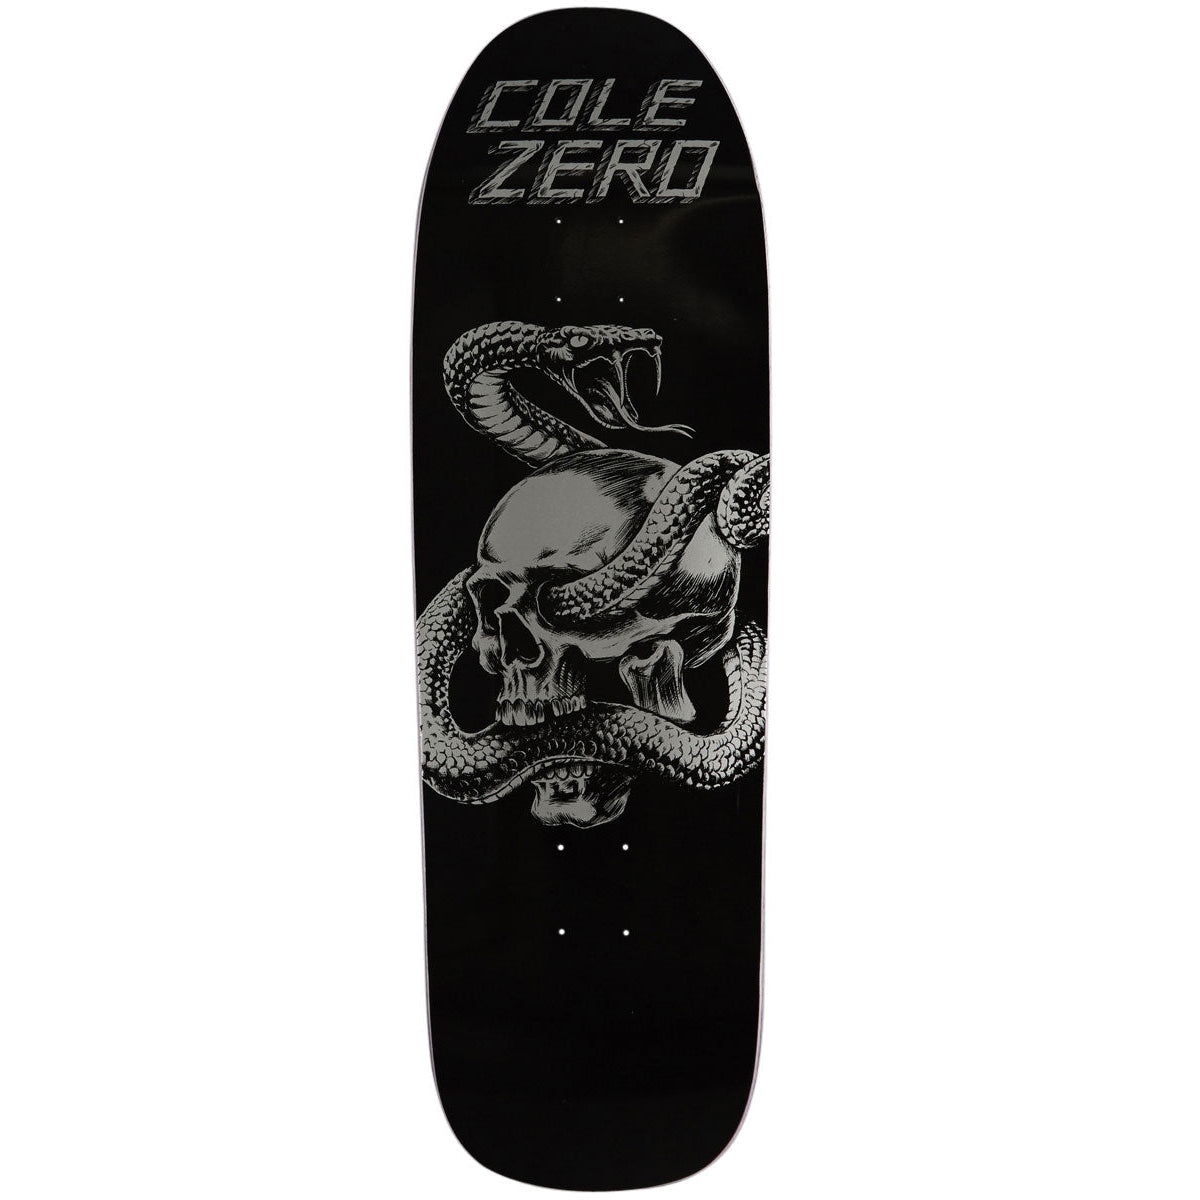 Zero Chris Cole Skull & Snake Shaped Deck 9.5"